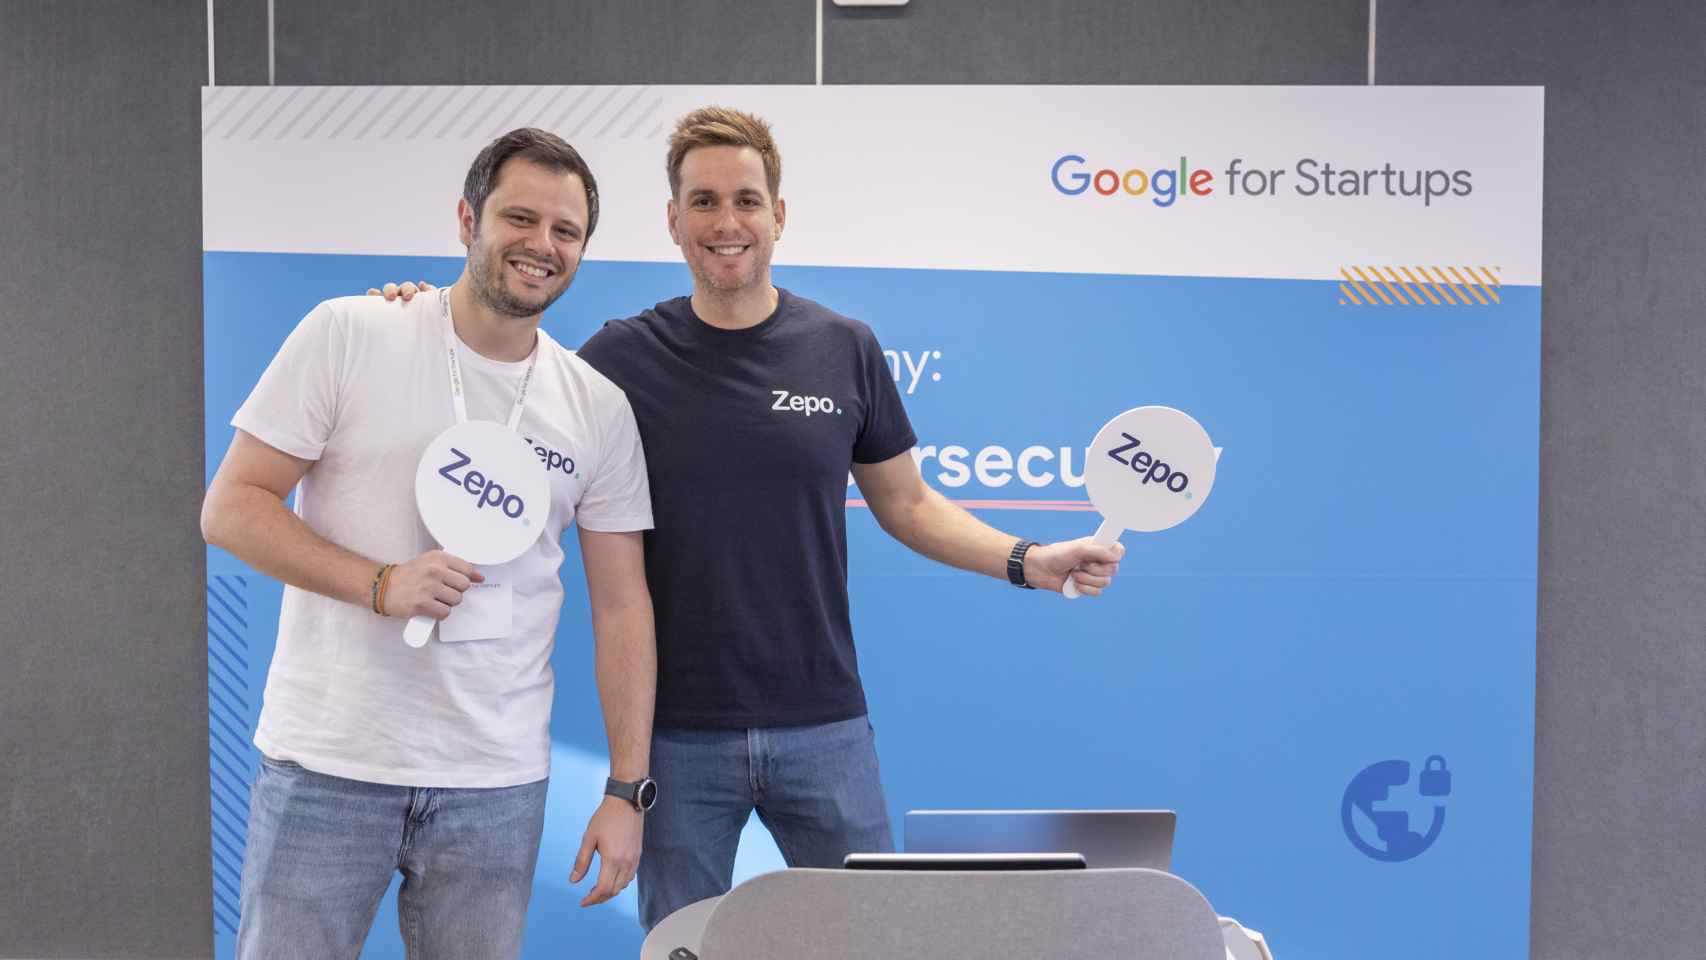 Equipo fundador en Múnich, de la mano de Google for Startups.